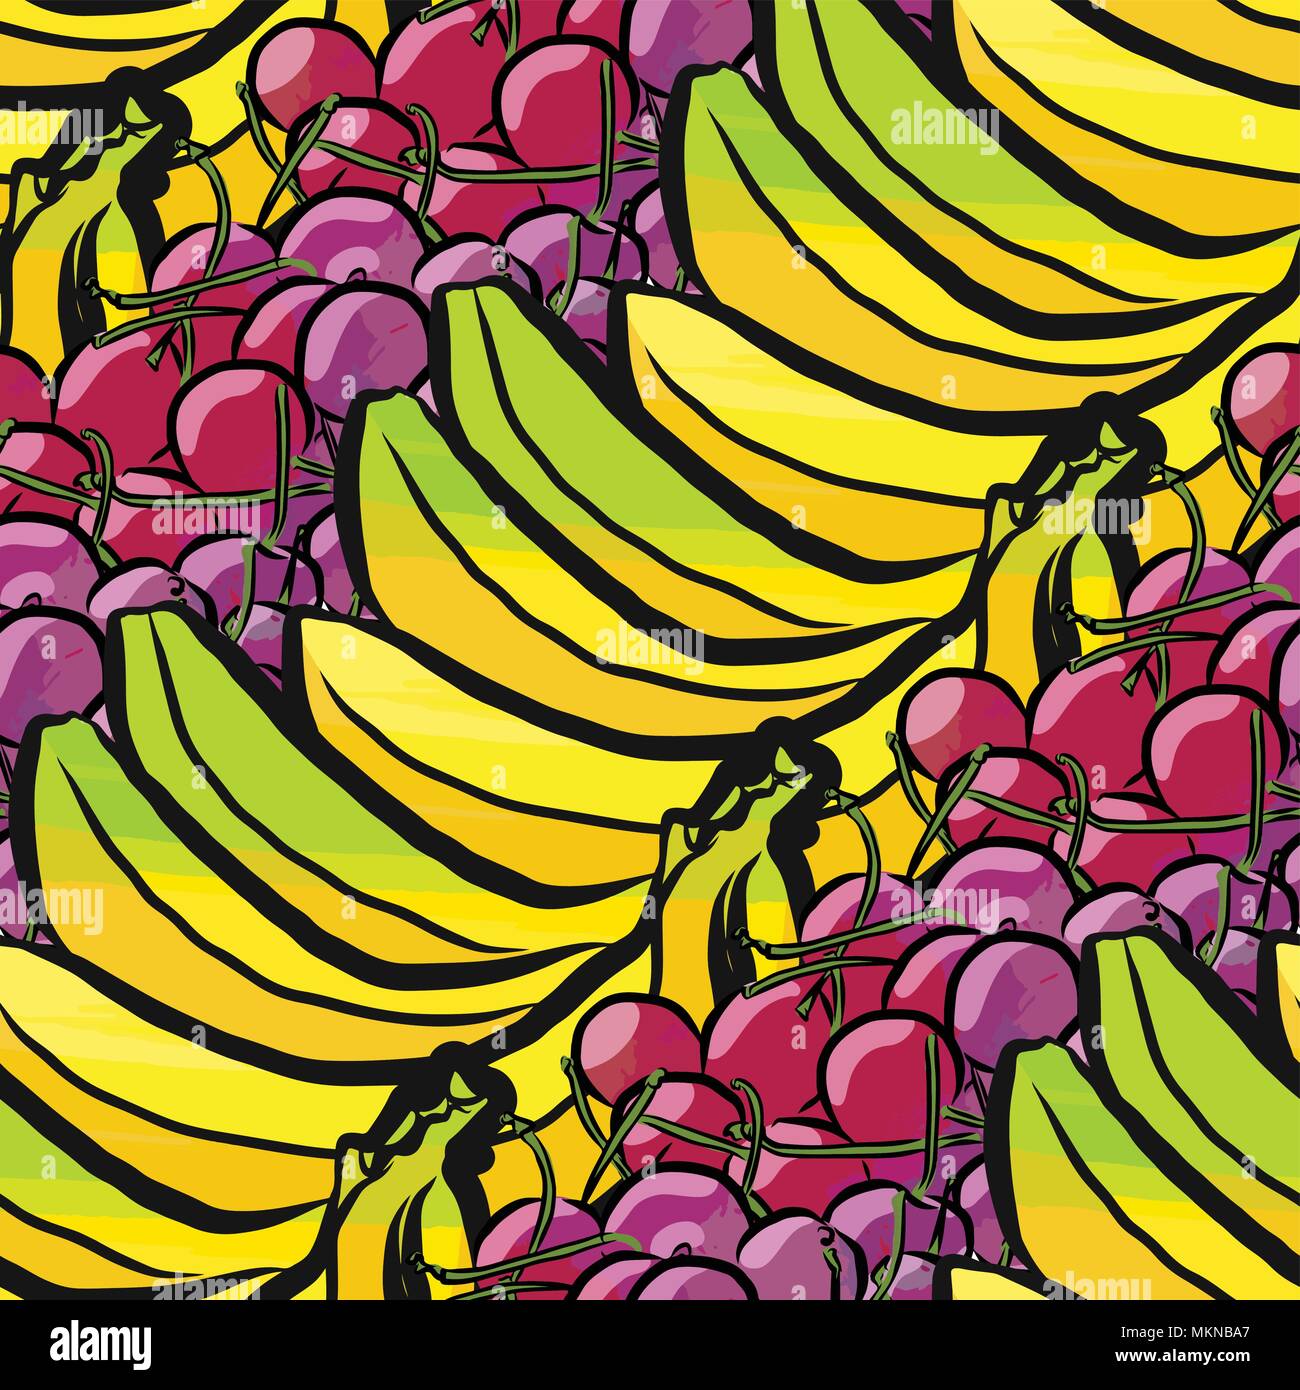 Vektor nahtlose Muster von Bananen und Kirschen. Von Hand gezeichnet und farbige Abbildung Stock Vektor